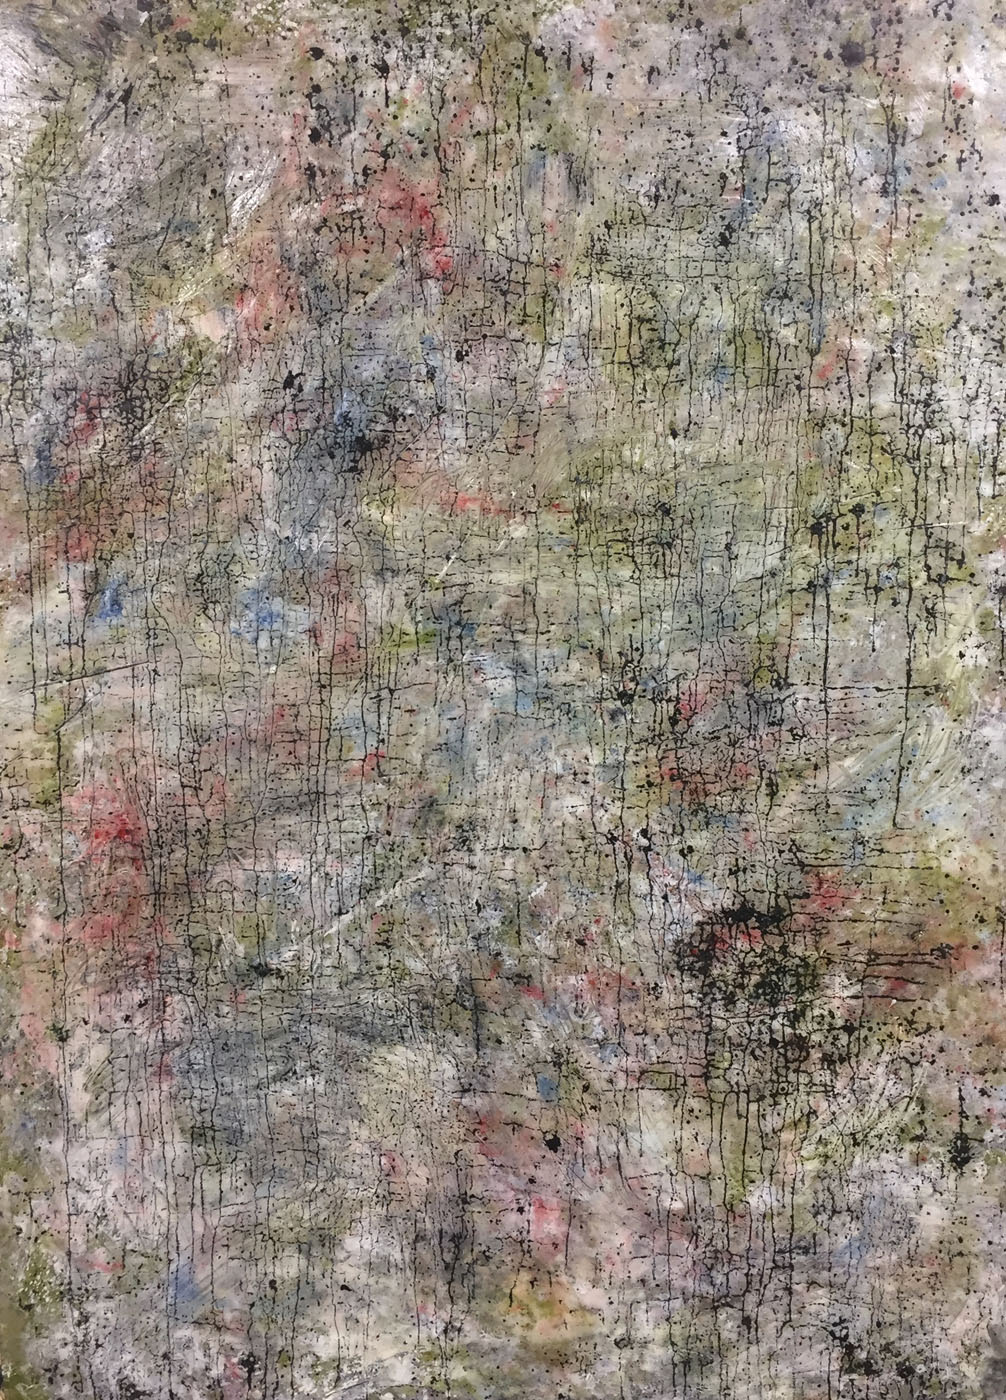 MARC FELD 2019 TRACES OF JOHN 2 Huile, pigmnent, acrylique et gouache sur papier 116 x 158 cm